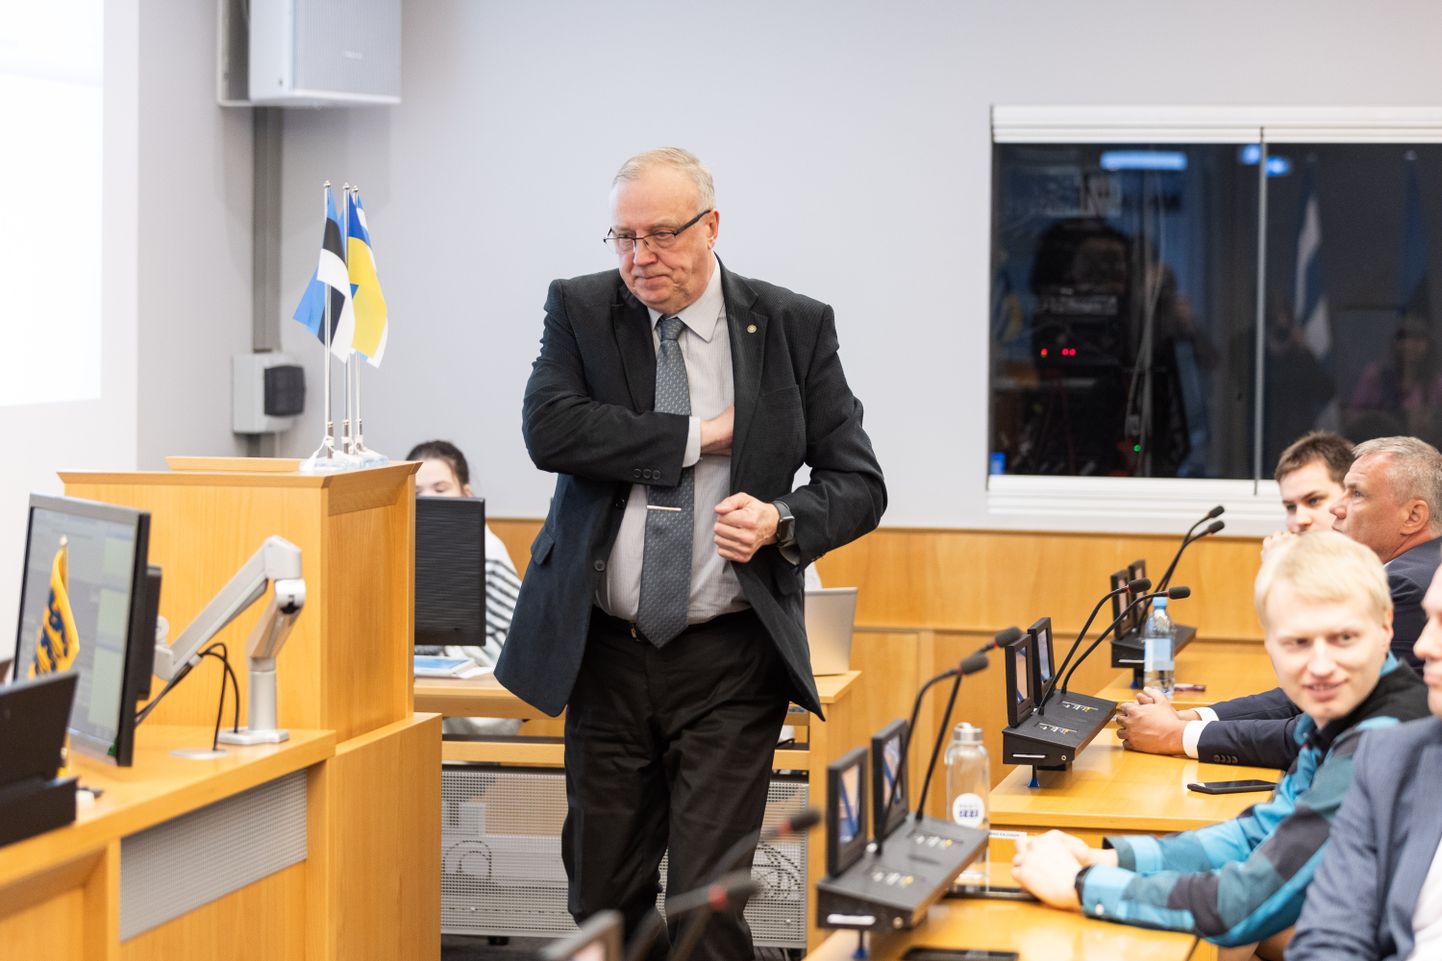 Tallinna linnavolikogu erakorraline istung, kus avaldati umbusaldust linnapeale. EKRE fraktsiooni juht Mart Kallas.